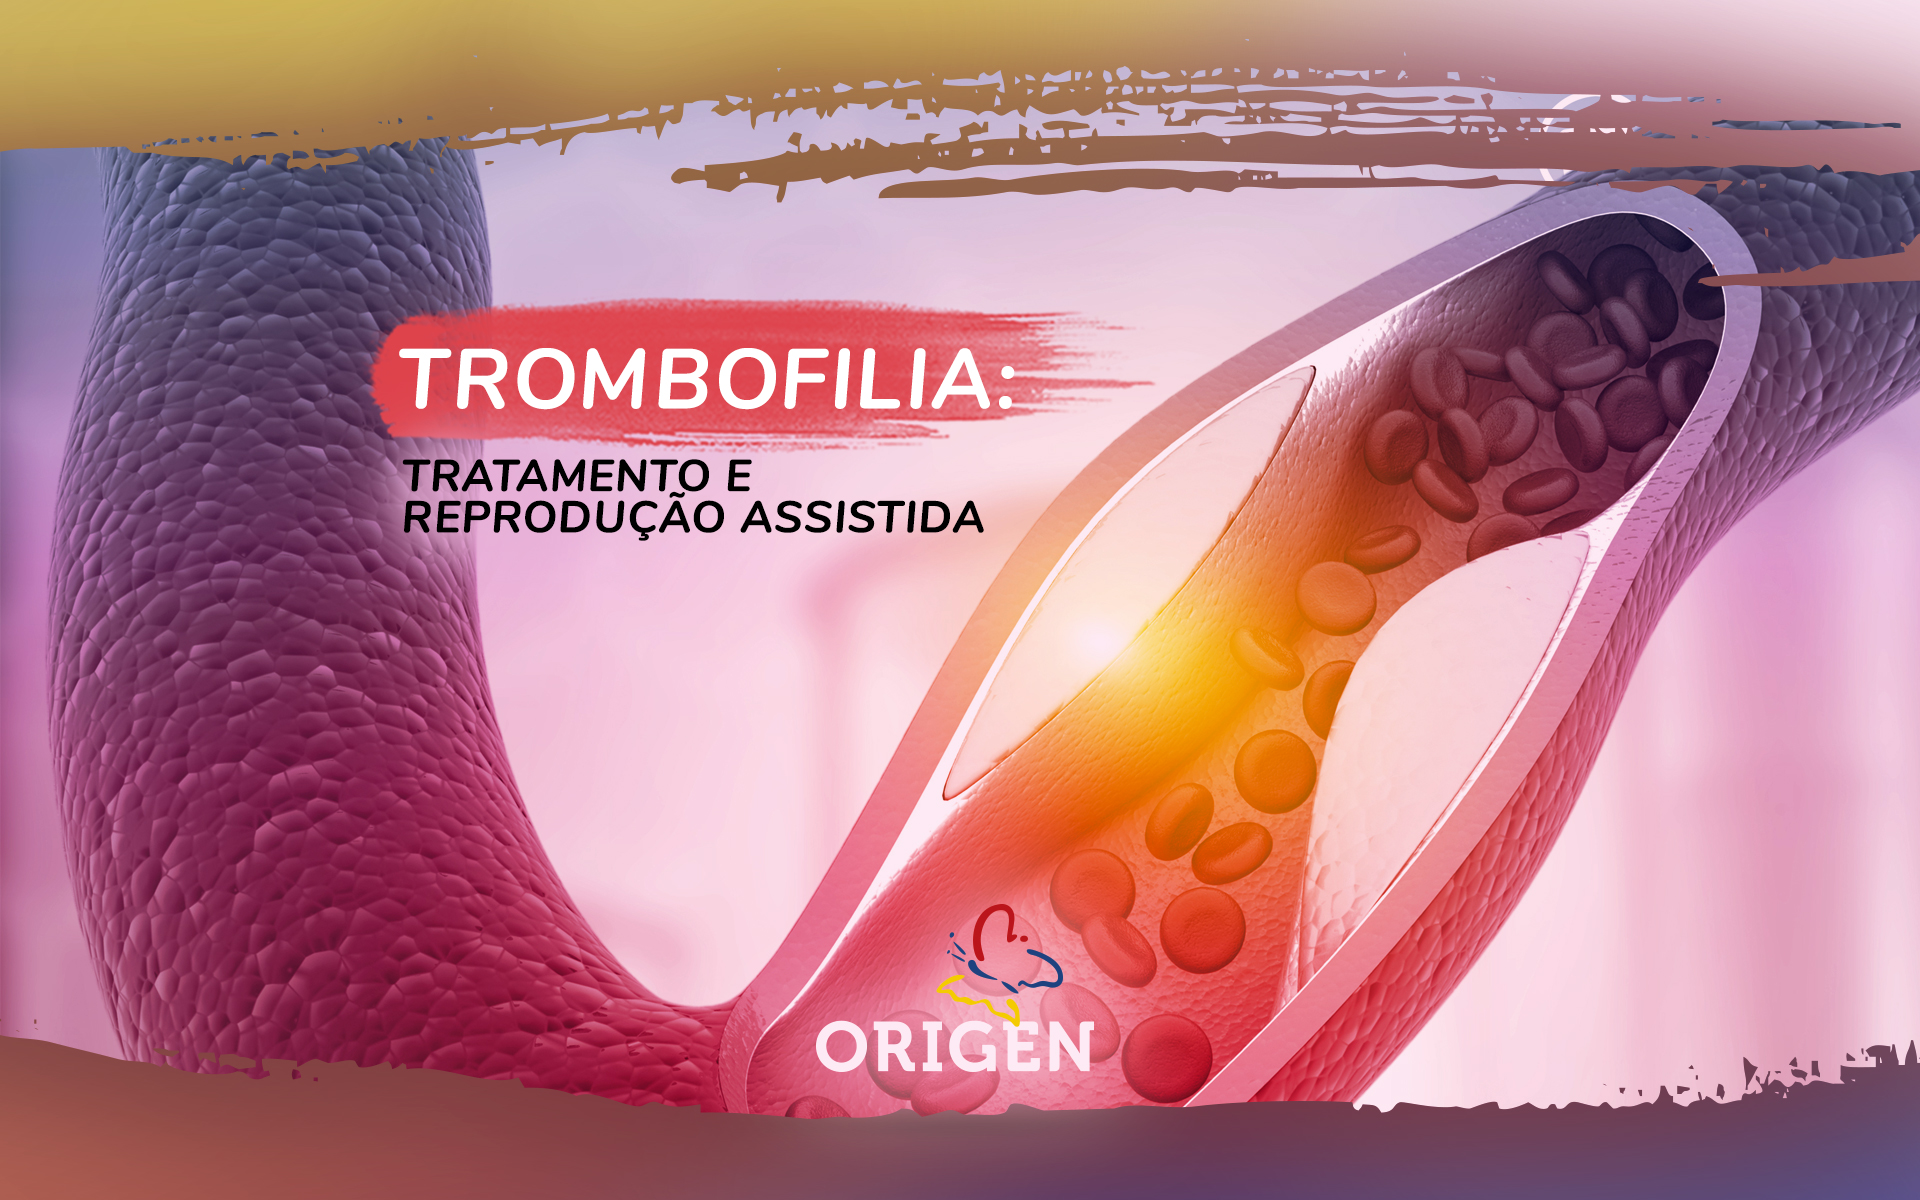 Trombofilia: tratamento e reprodução assistida